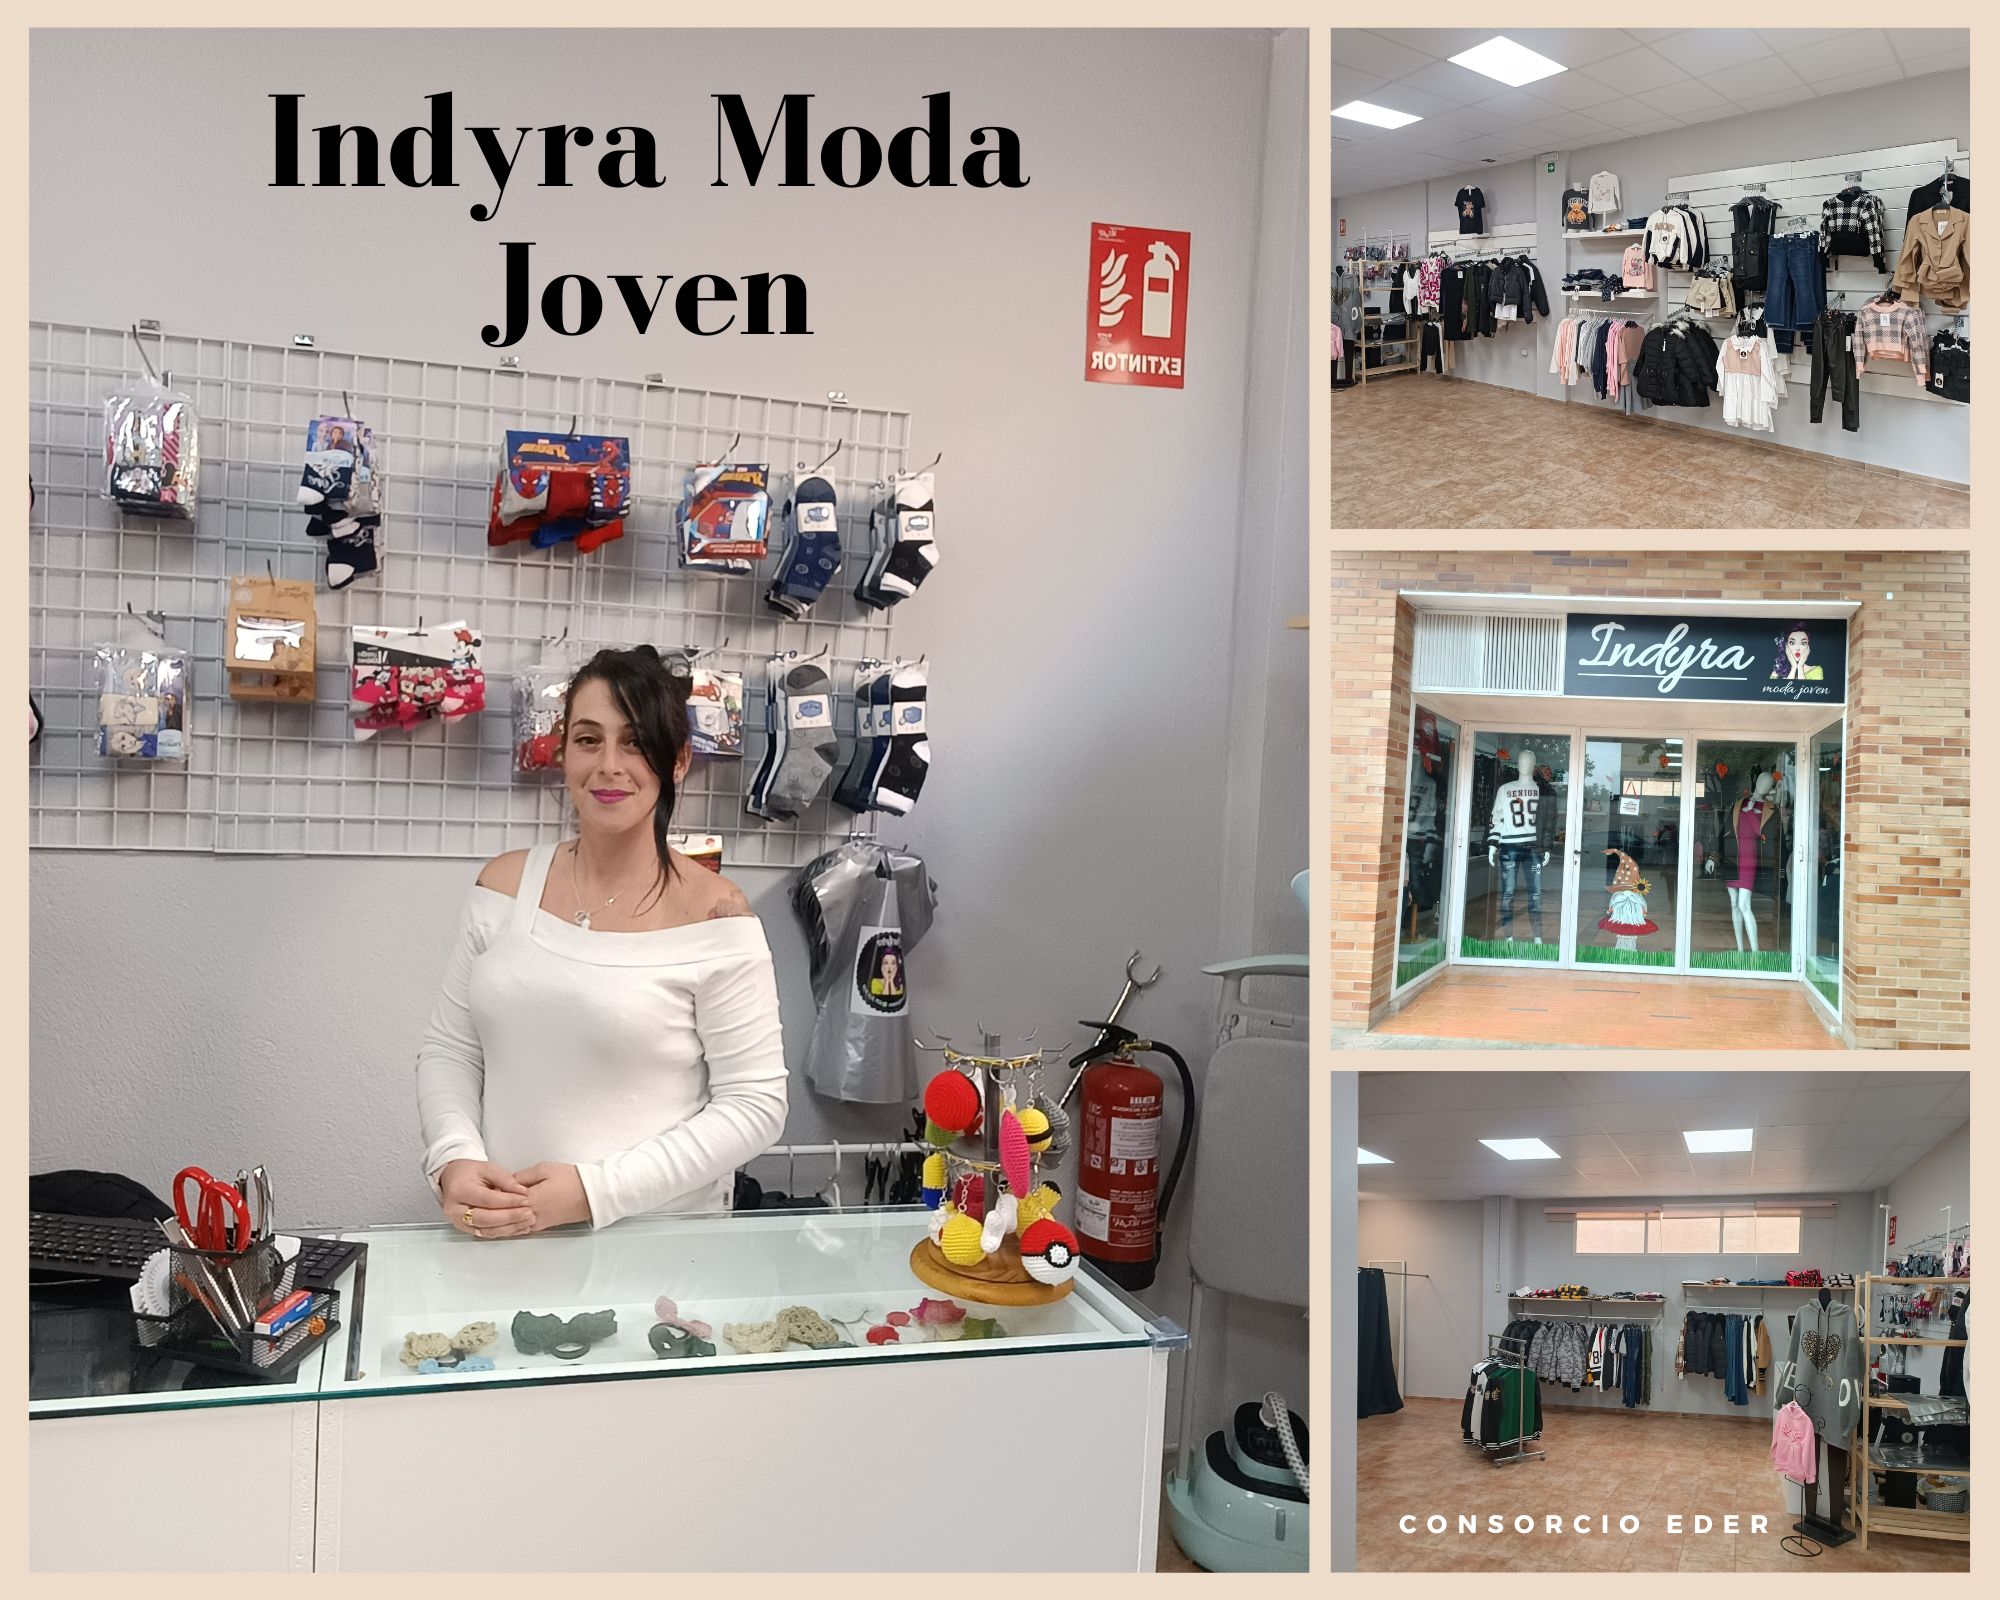 Indyra Moda Joven”, nueva tienda de ropa de niñ @s y situada en Tudela - Navarra